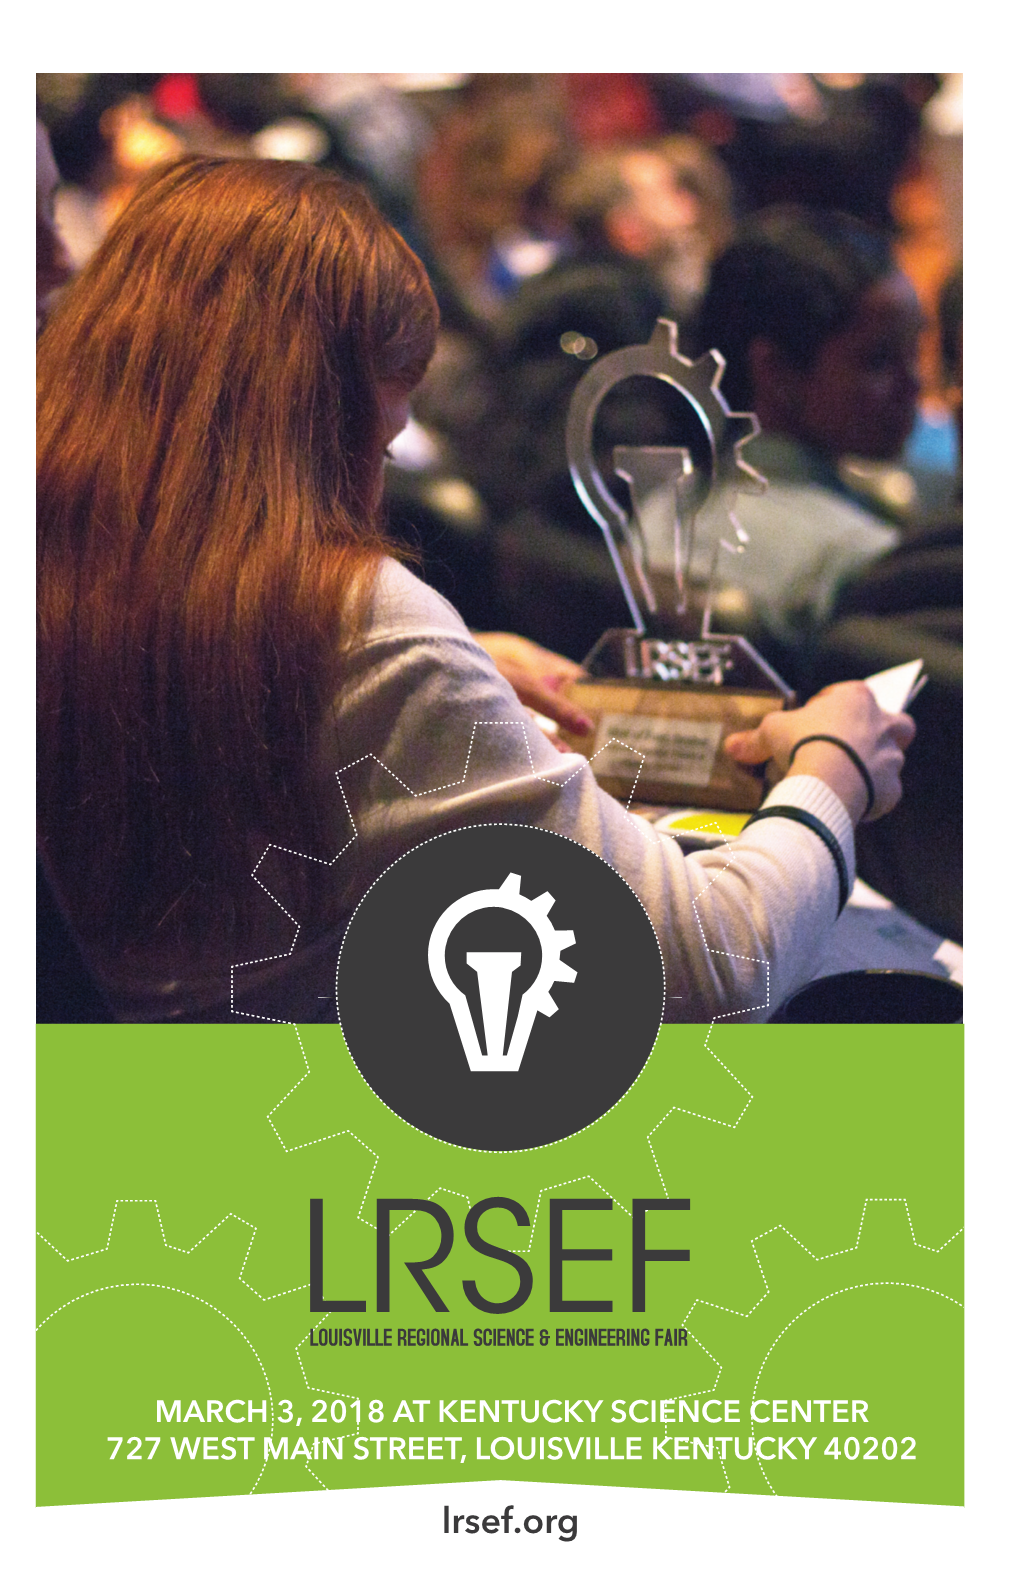 View the 2018 LRSEF Program [PDF]